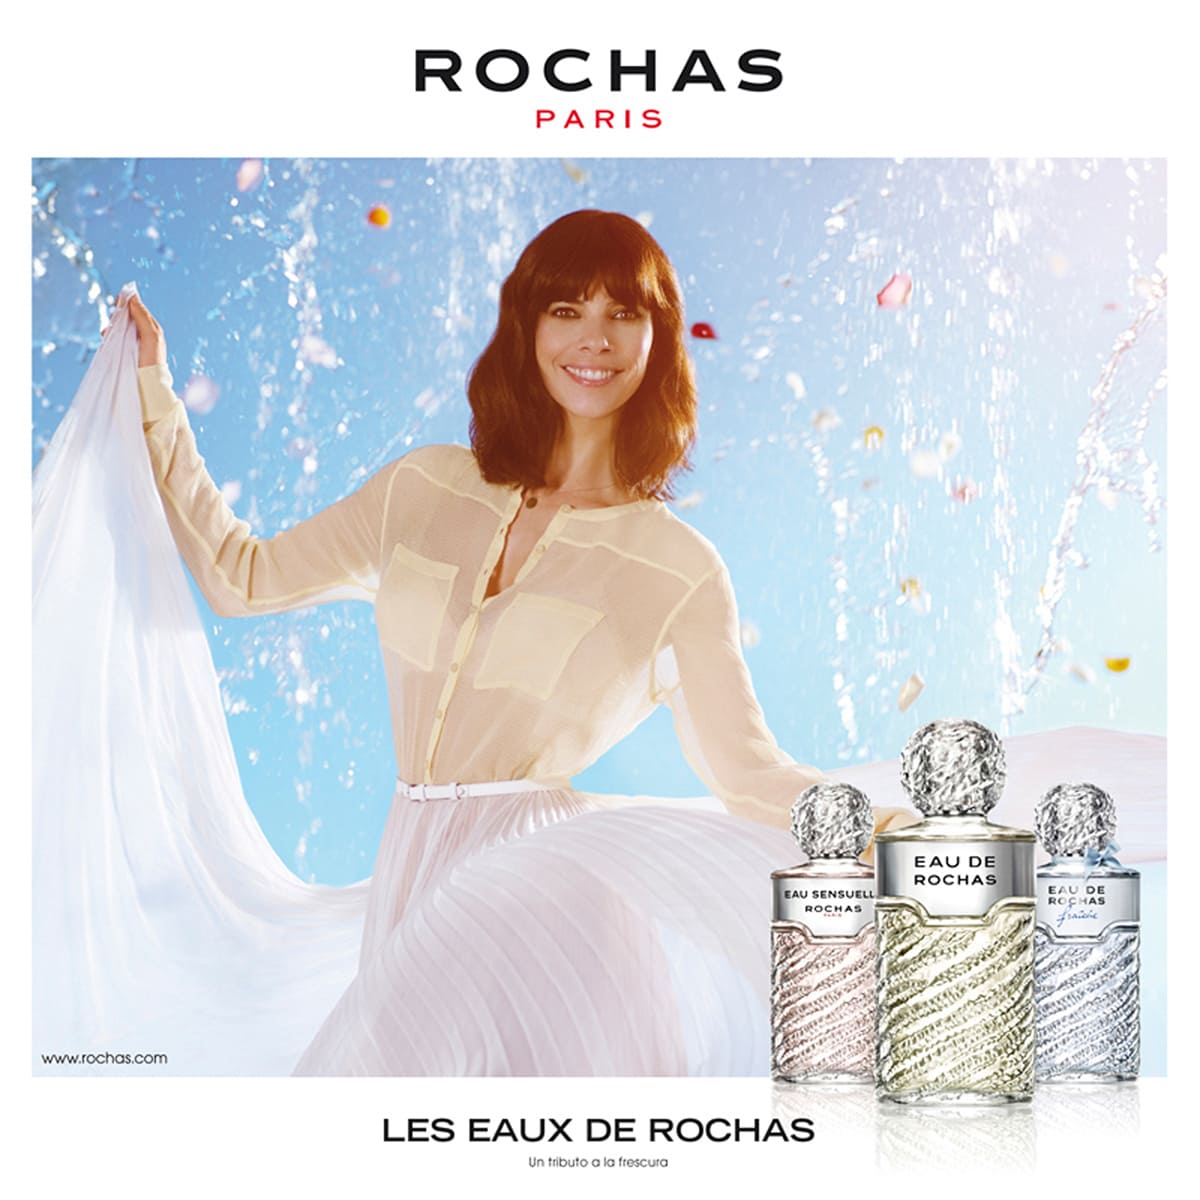 Campaña publicitaria realizada por Cristina López junto a Enri Mür Studio para la fragancia de Rocha, protagonizada por Maribel Verdú.